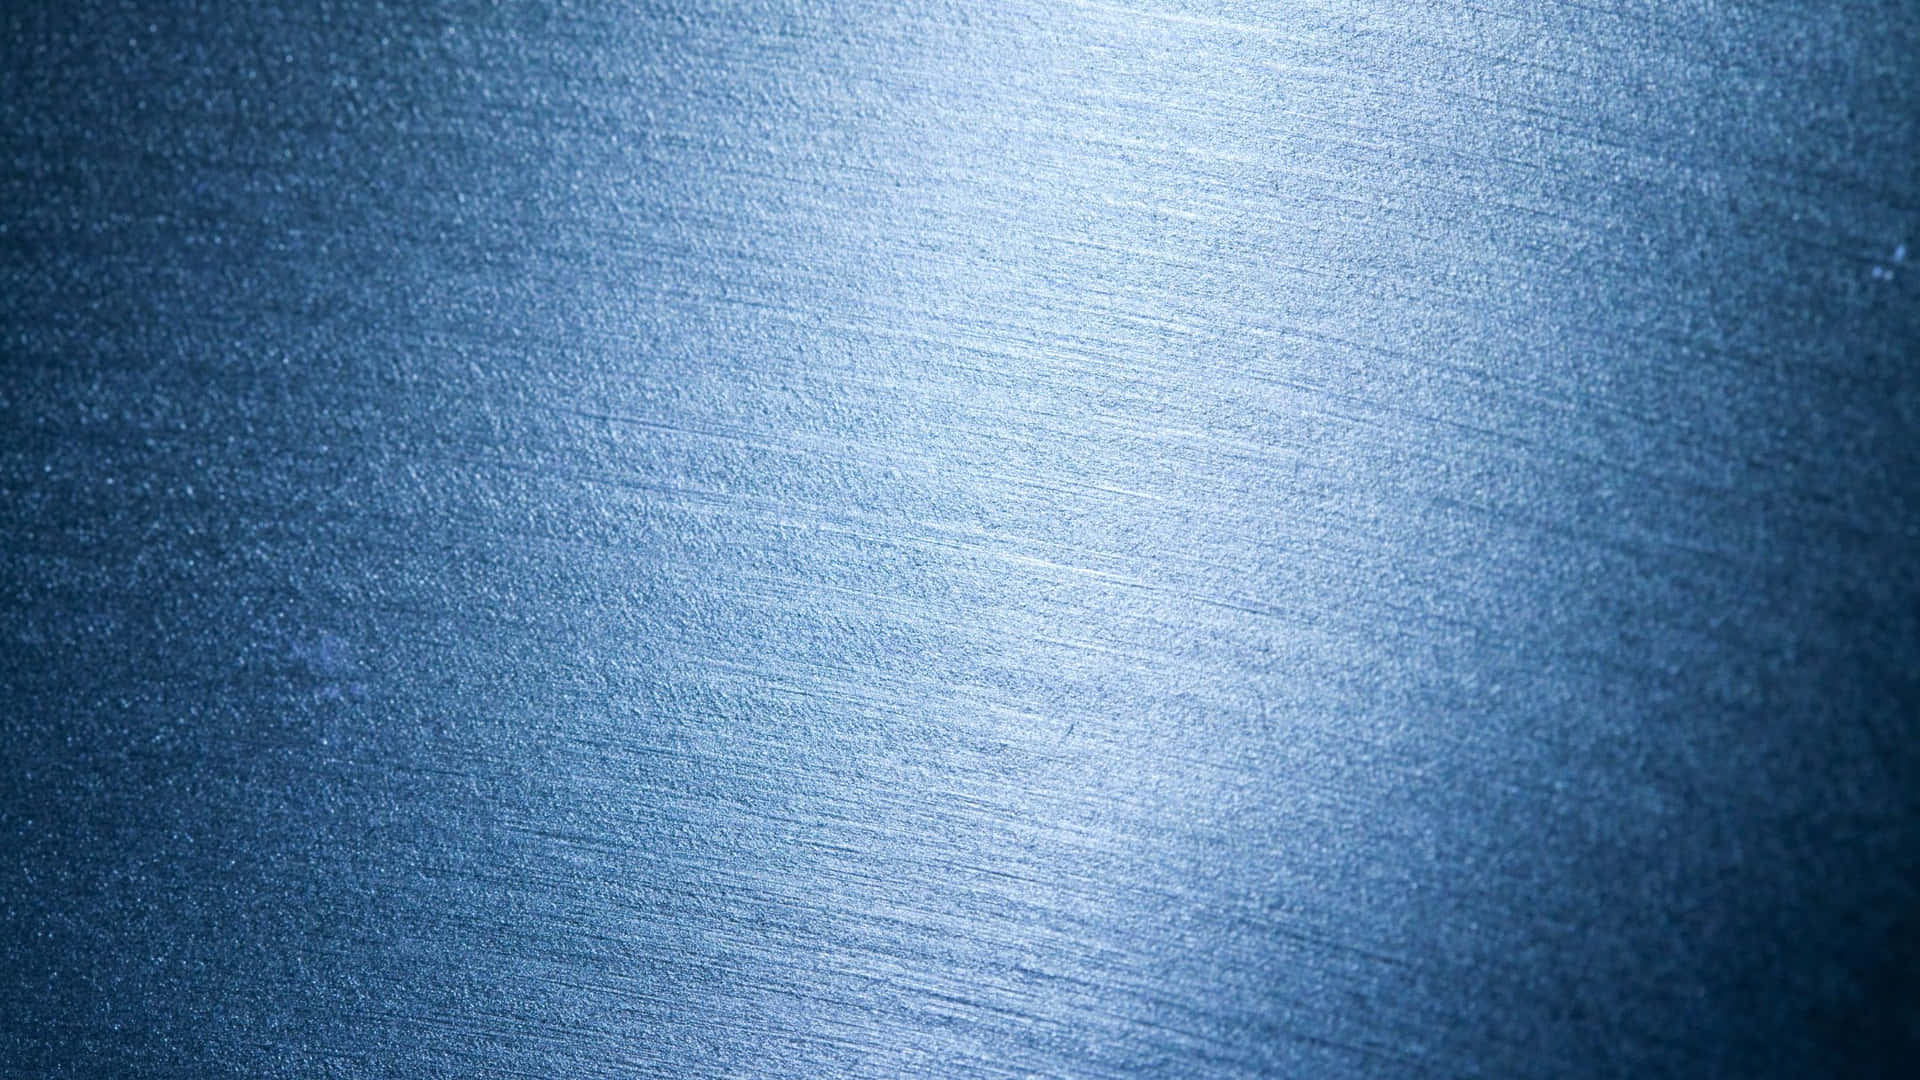 brushed aluminum background 1920x1080